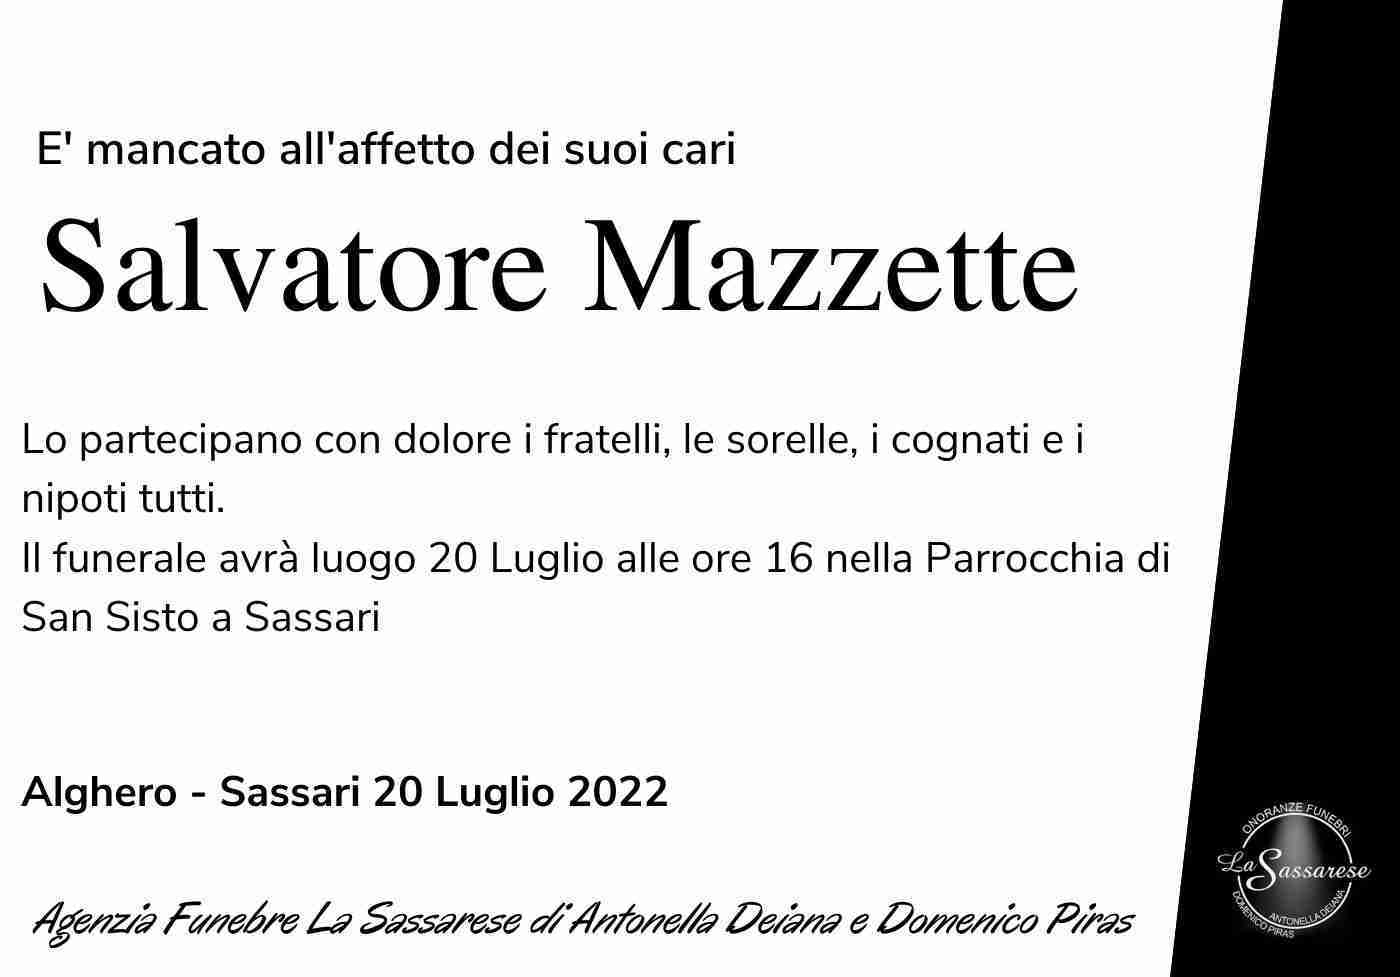 Salvatore Mazzette